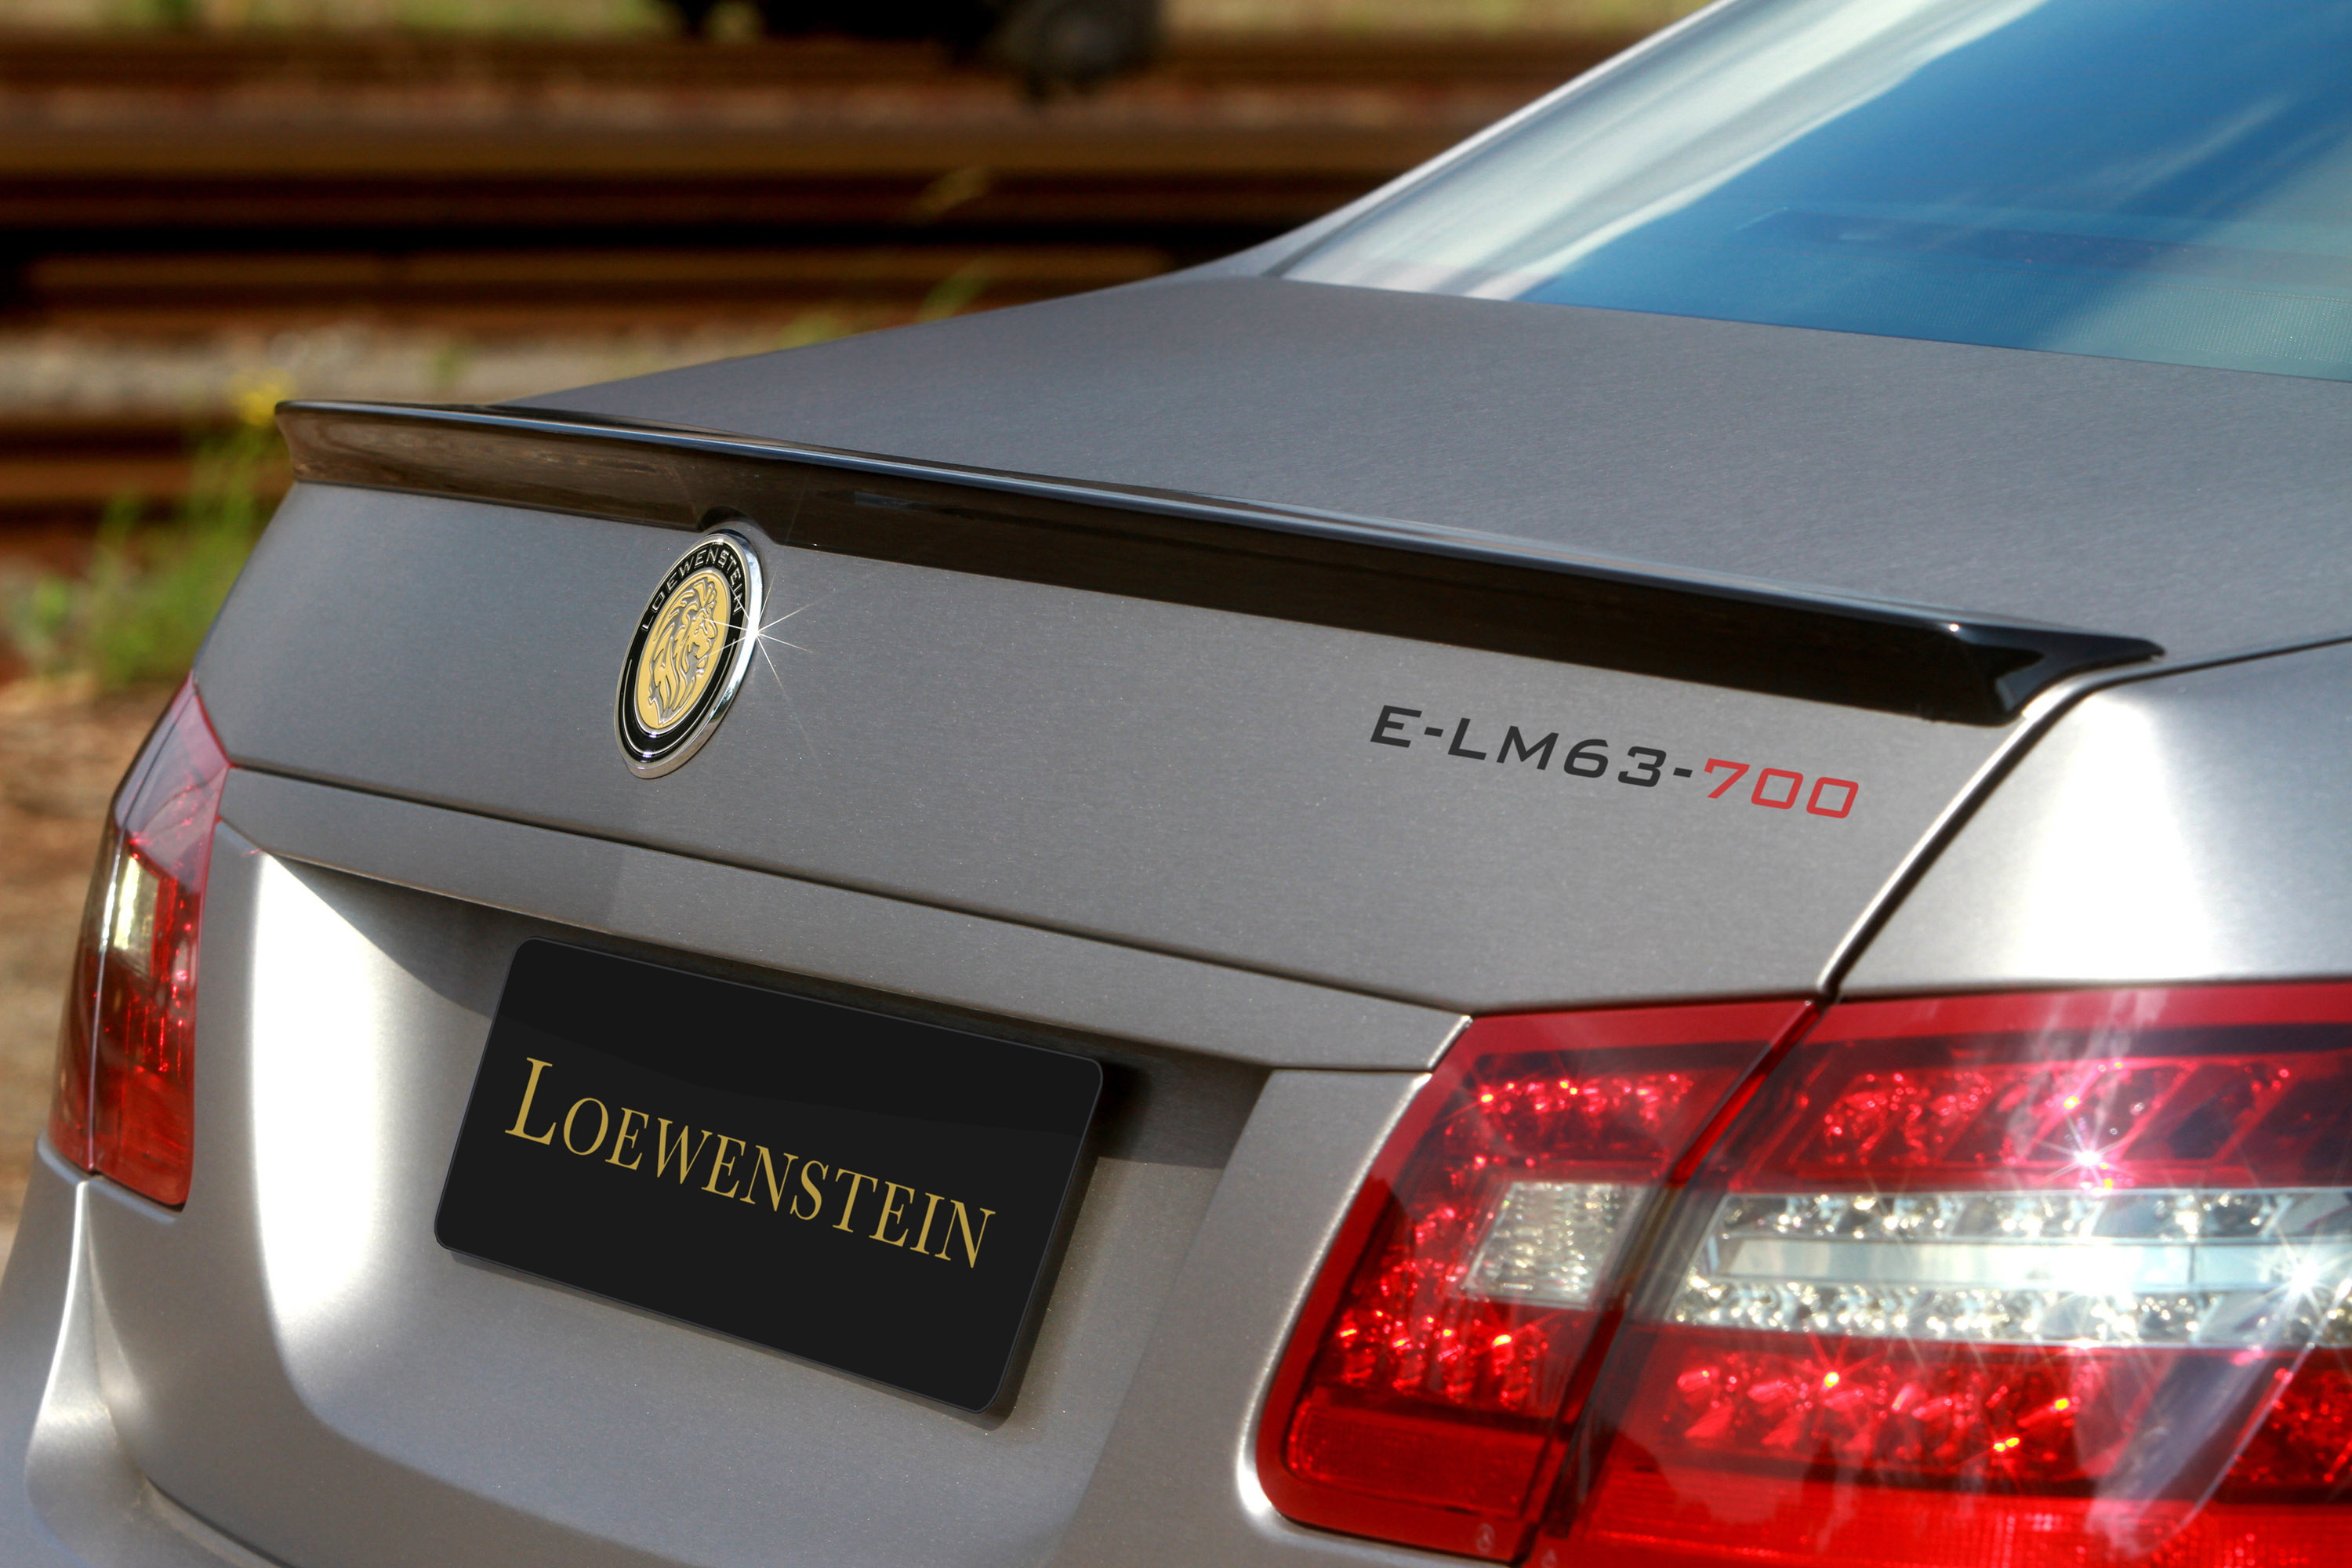 Loewenstein Mercedes-Benz E-LM63-700